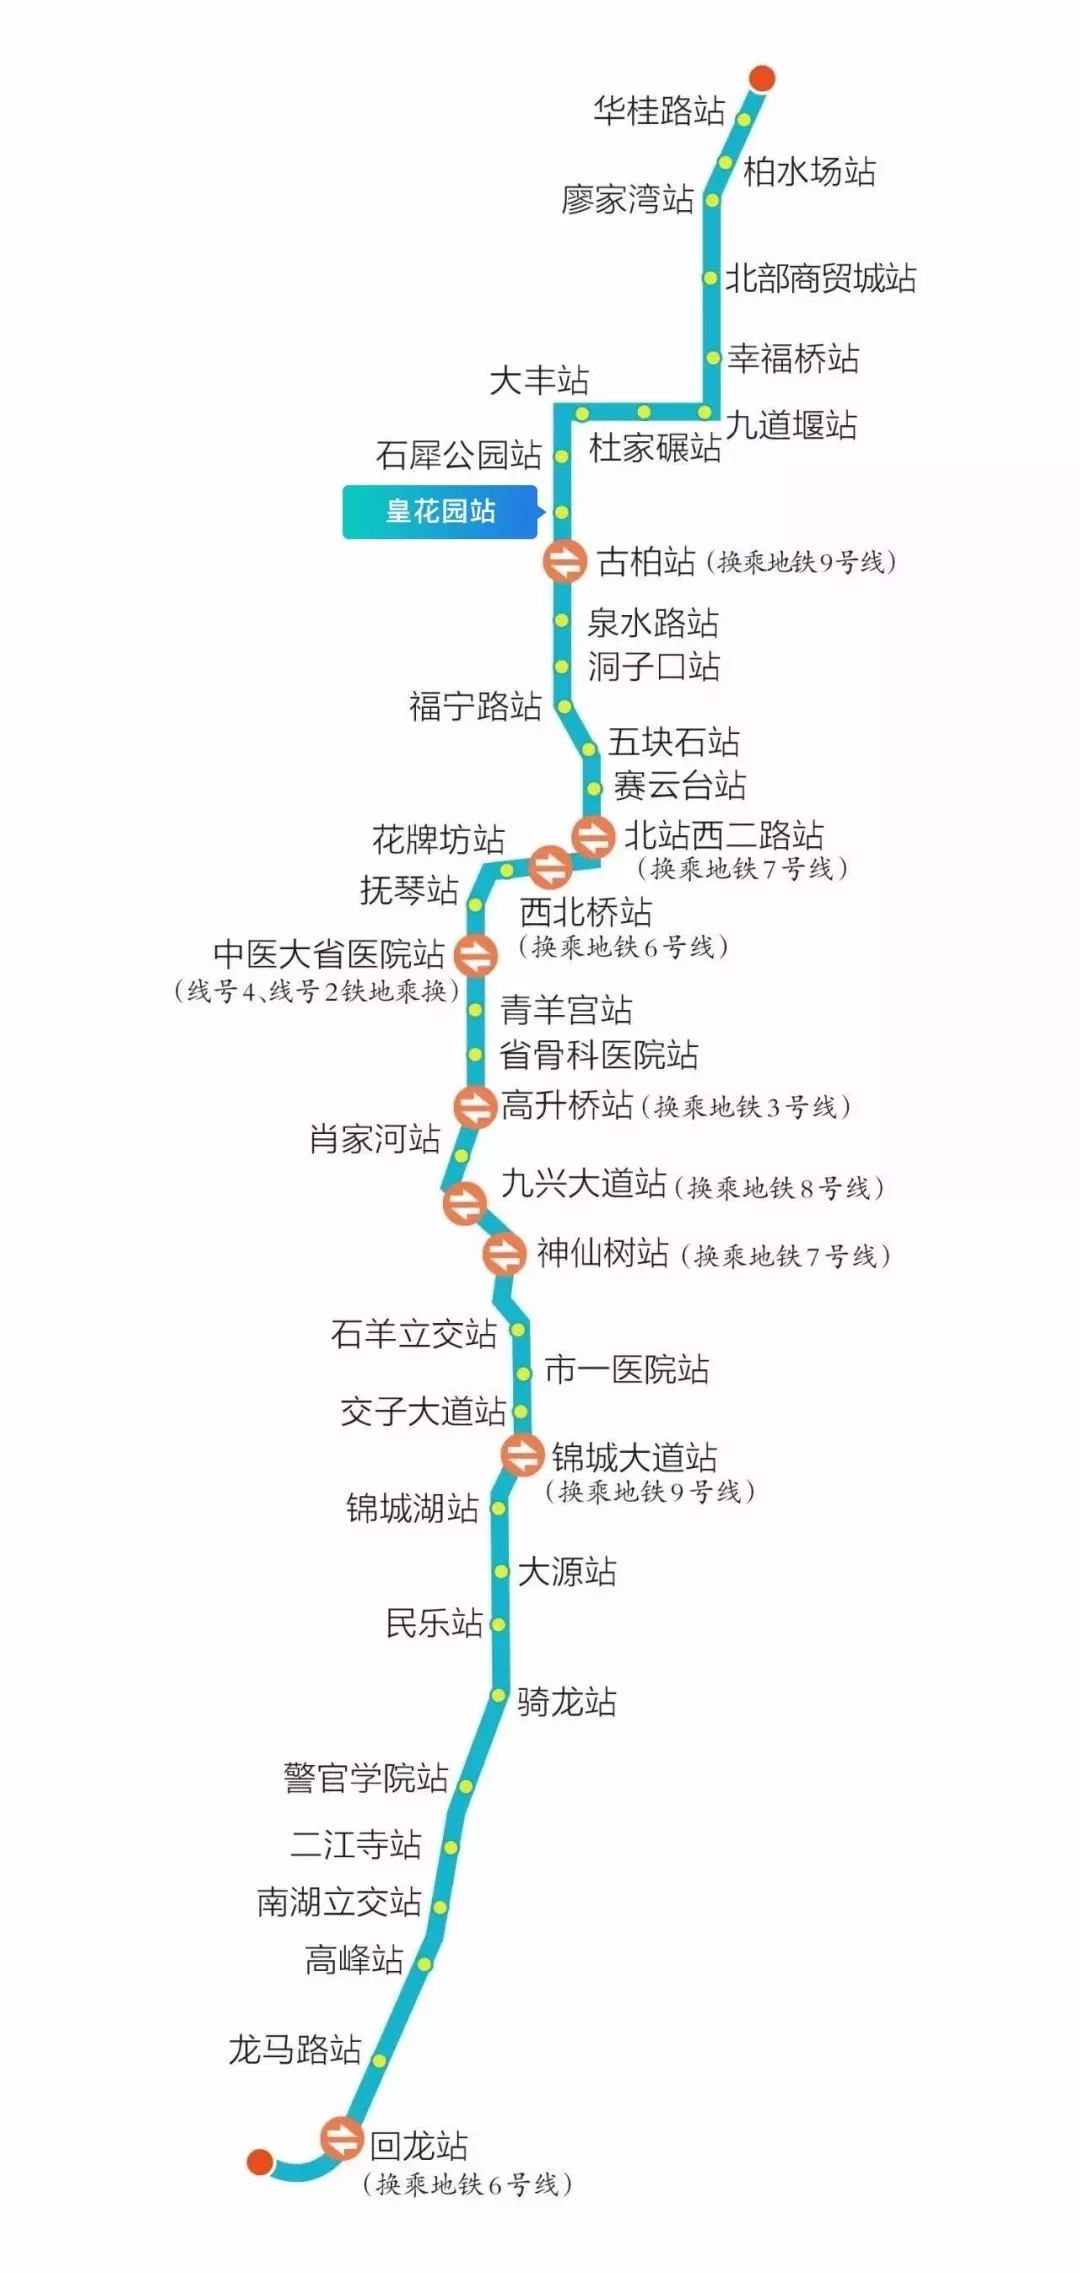 成都地铁23号线图片